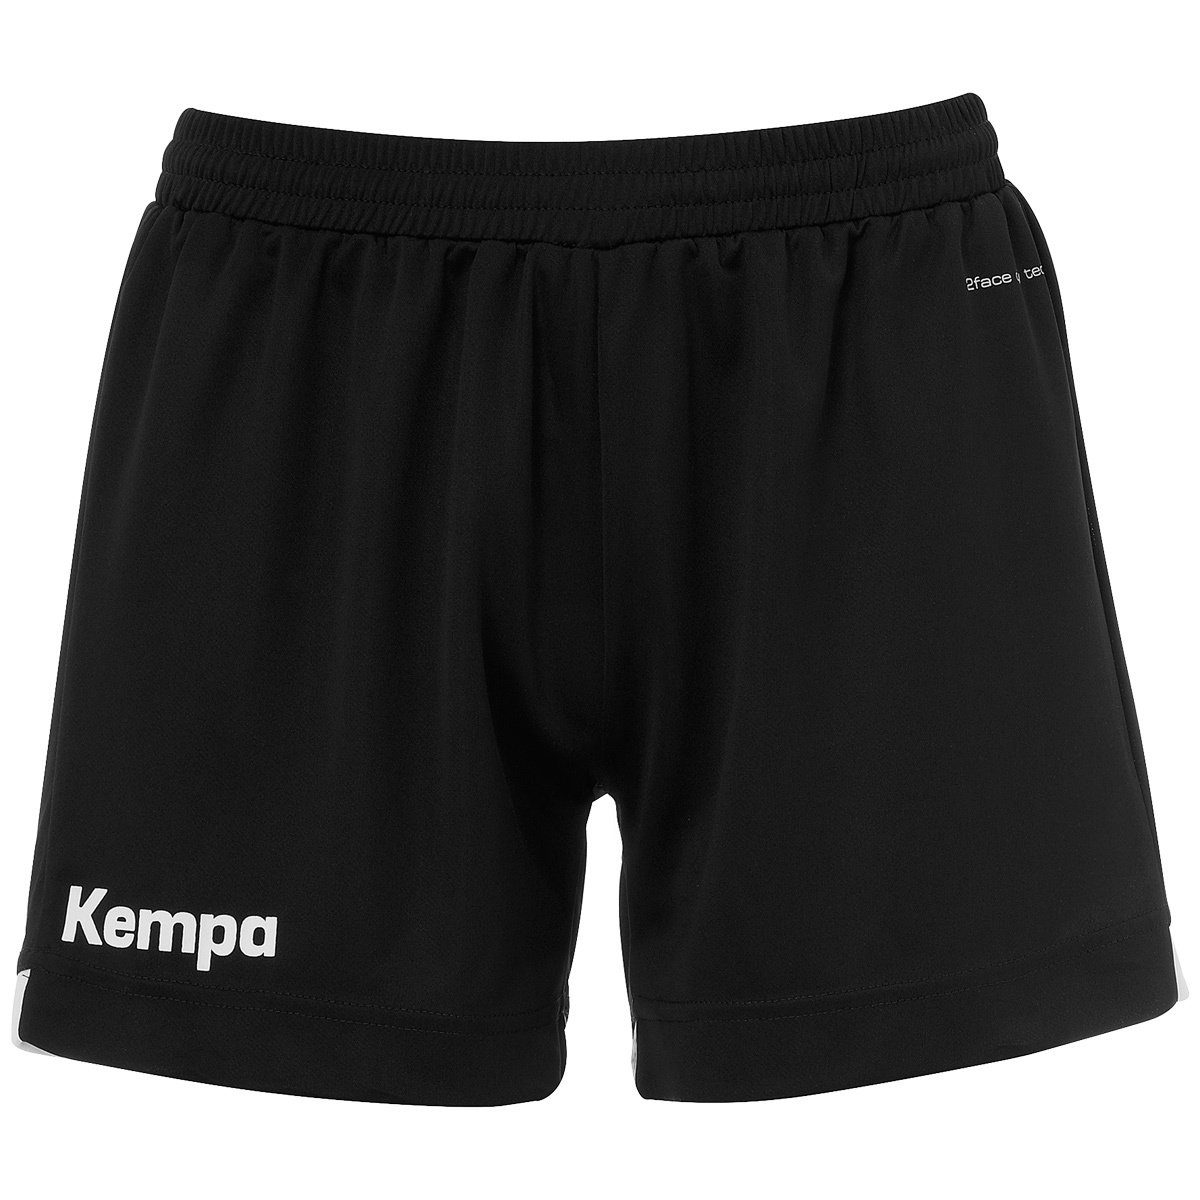 Kempa Shorts Kempa WOMEN schwarz/weiß PLAYER Shorts